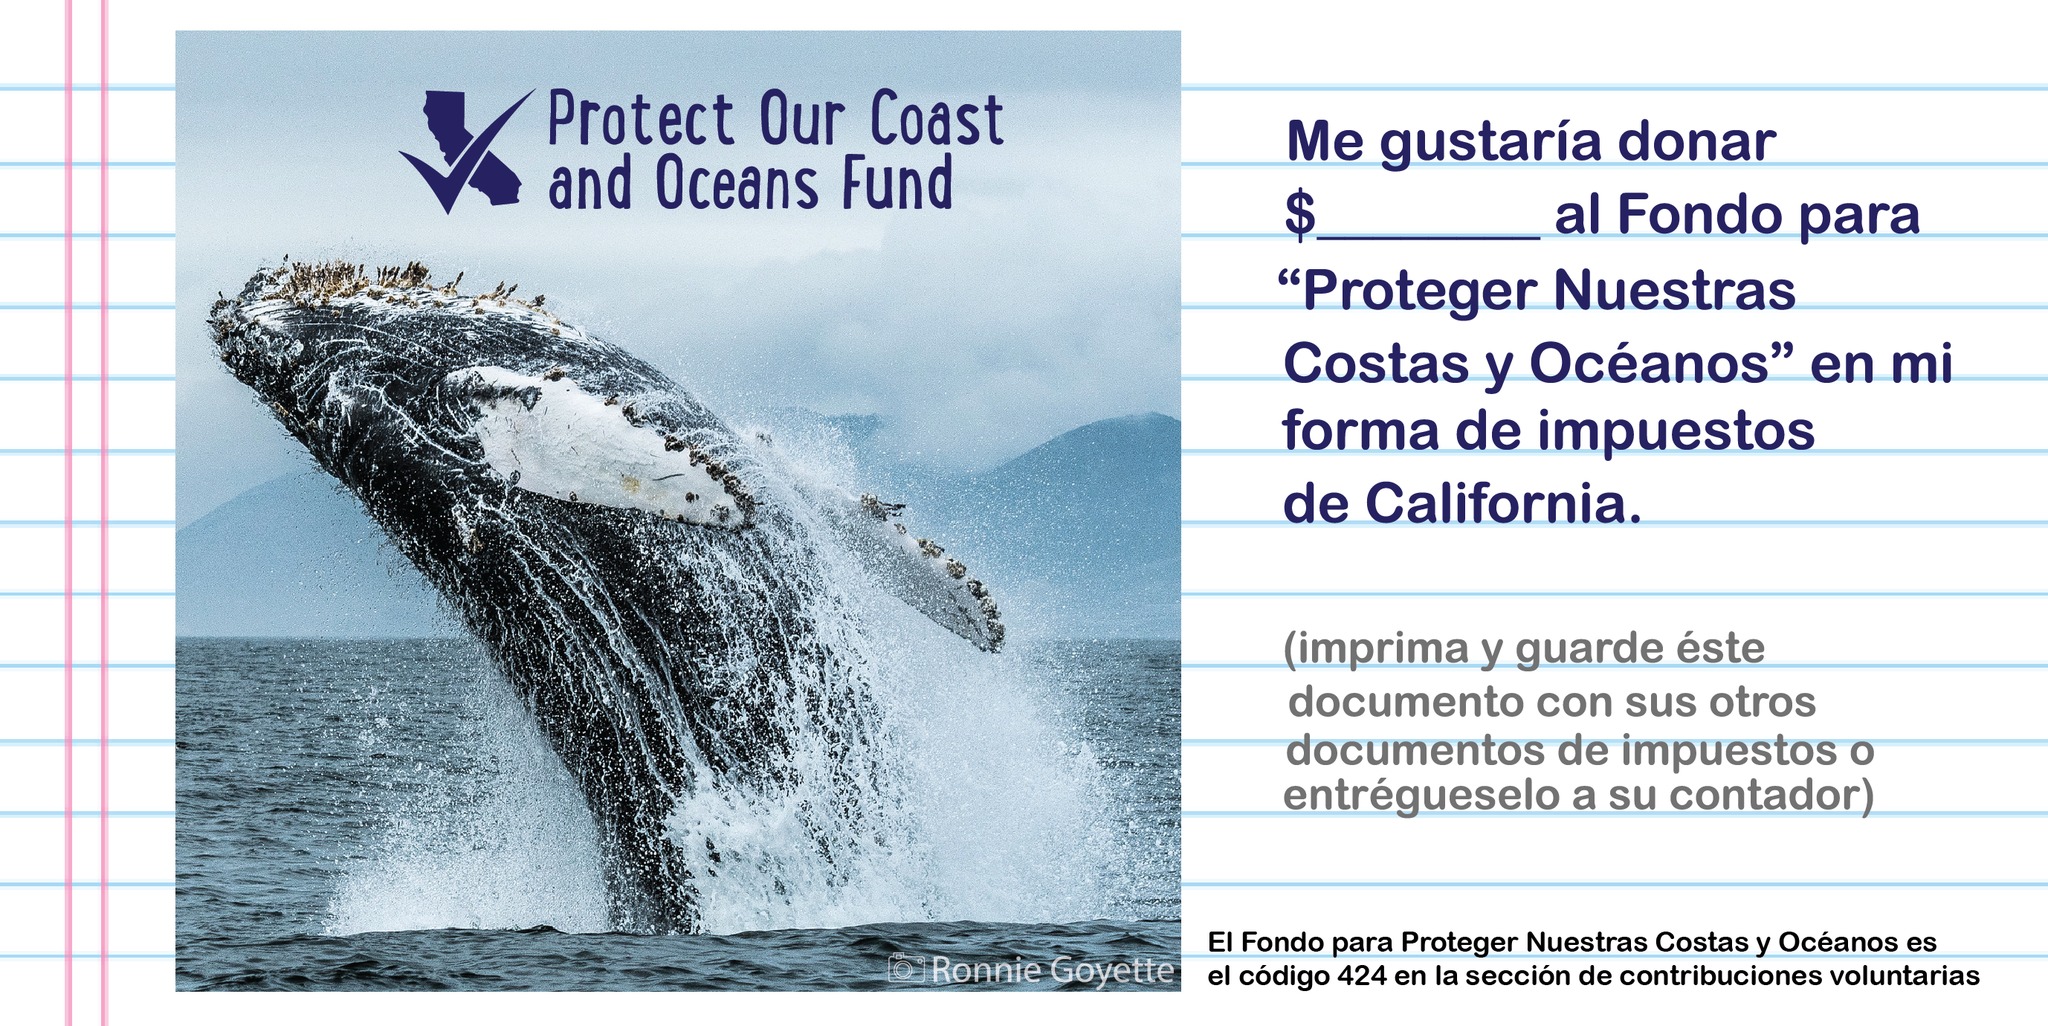 Me gustaria donar $__ al Fondo para Proteger Nuestras Costas y 
									Oceanos en mi forma de impuestos de California. Imprima y guarde este documento con 
									sus otros documentos de impuestos o entregueselo a su contador.